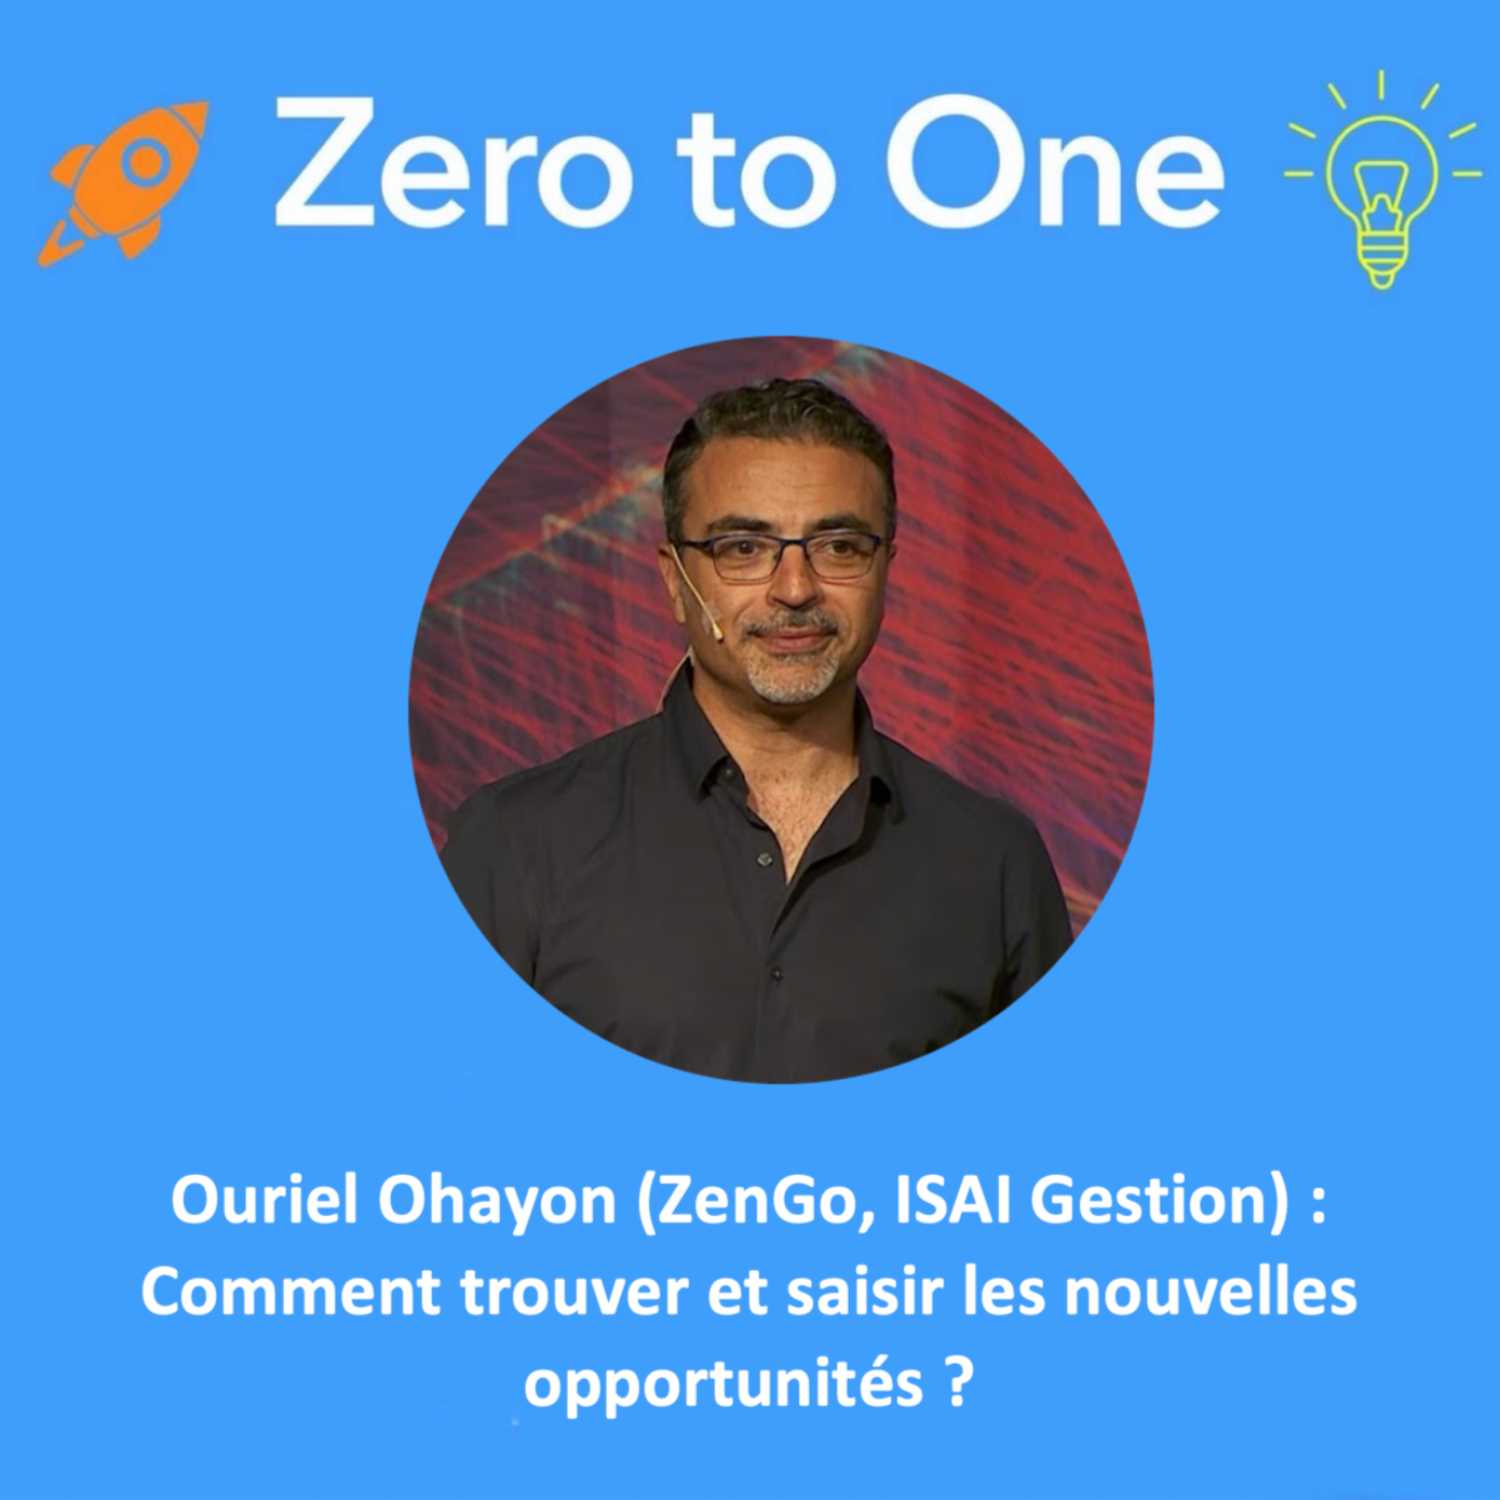 Ouriel Ohayon (ZenGo, ISAI Gestion) : Comment trouver et saisir les nouvelles opportunités? 💸🚀